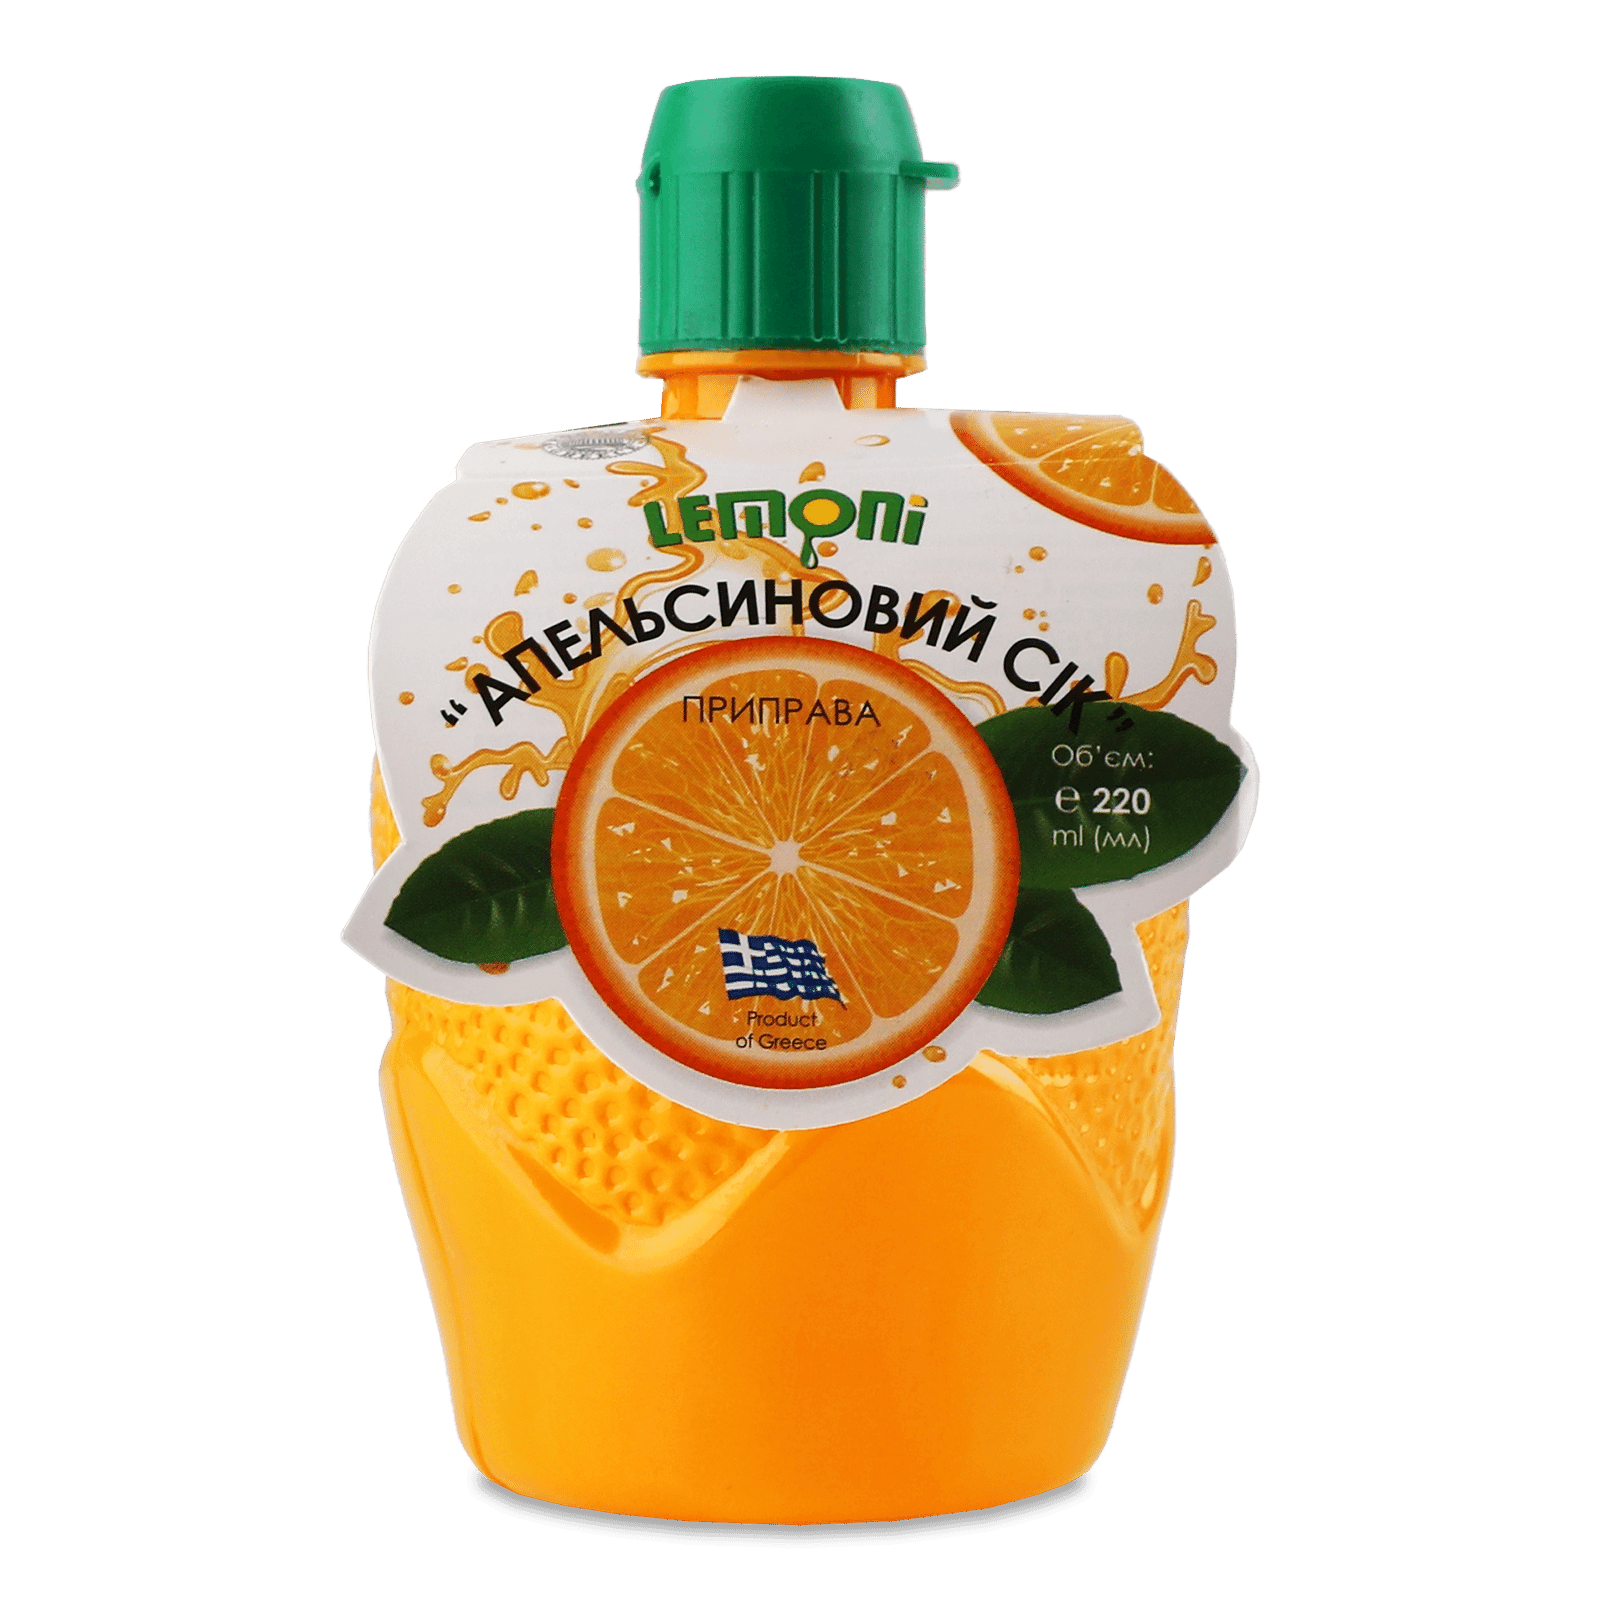 Сік Lemoni апельсиновий - 1